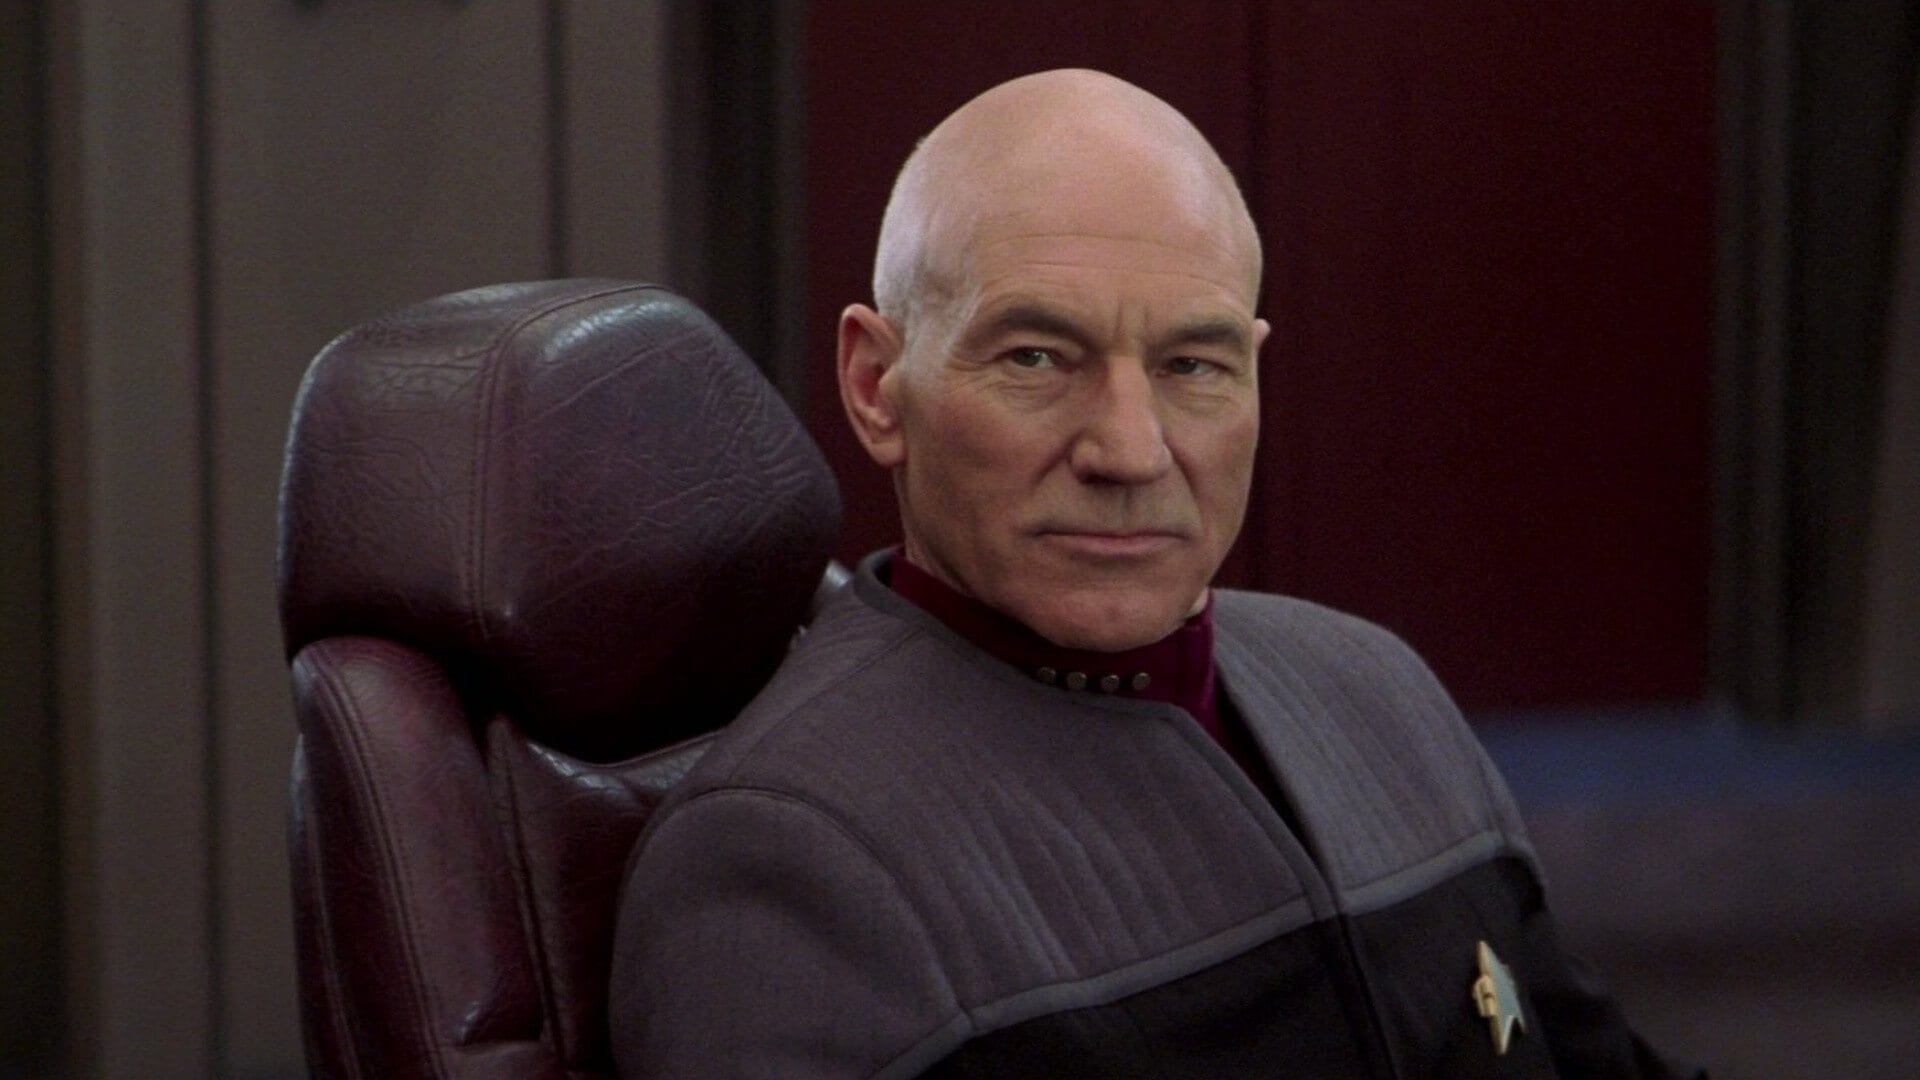 Patrick Stewart Returns As Captain Picard Geeks Gamers